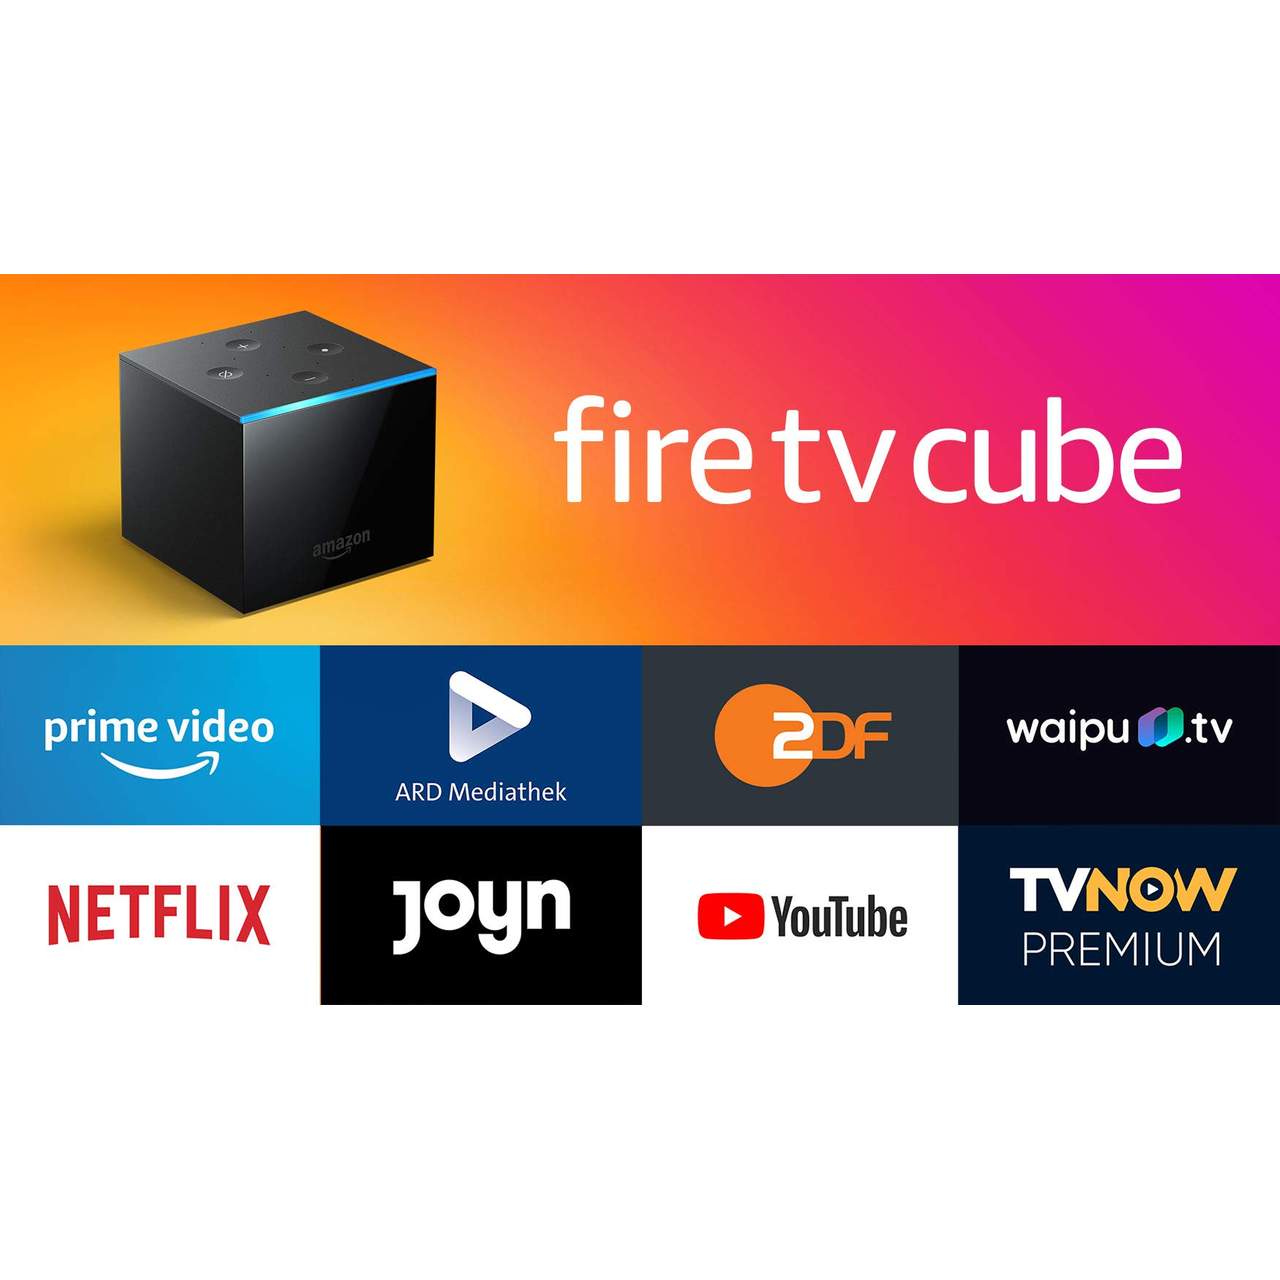 Der neue Fire TV Cube│Hands-free